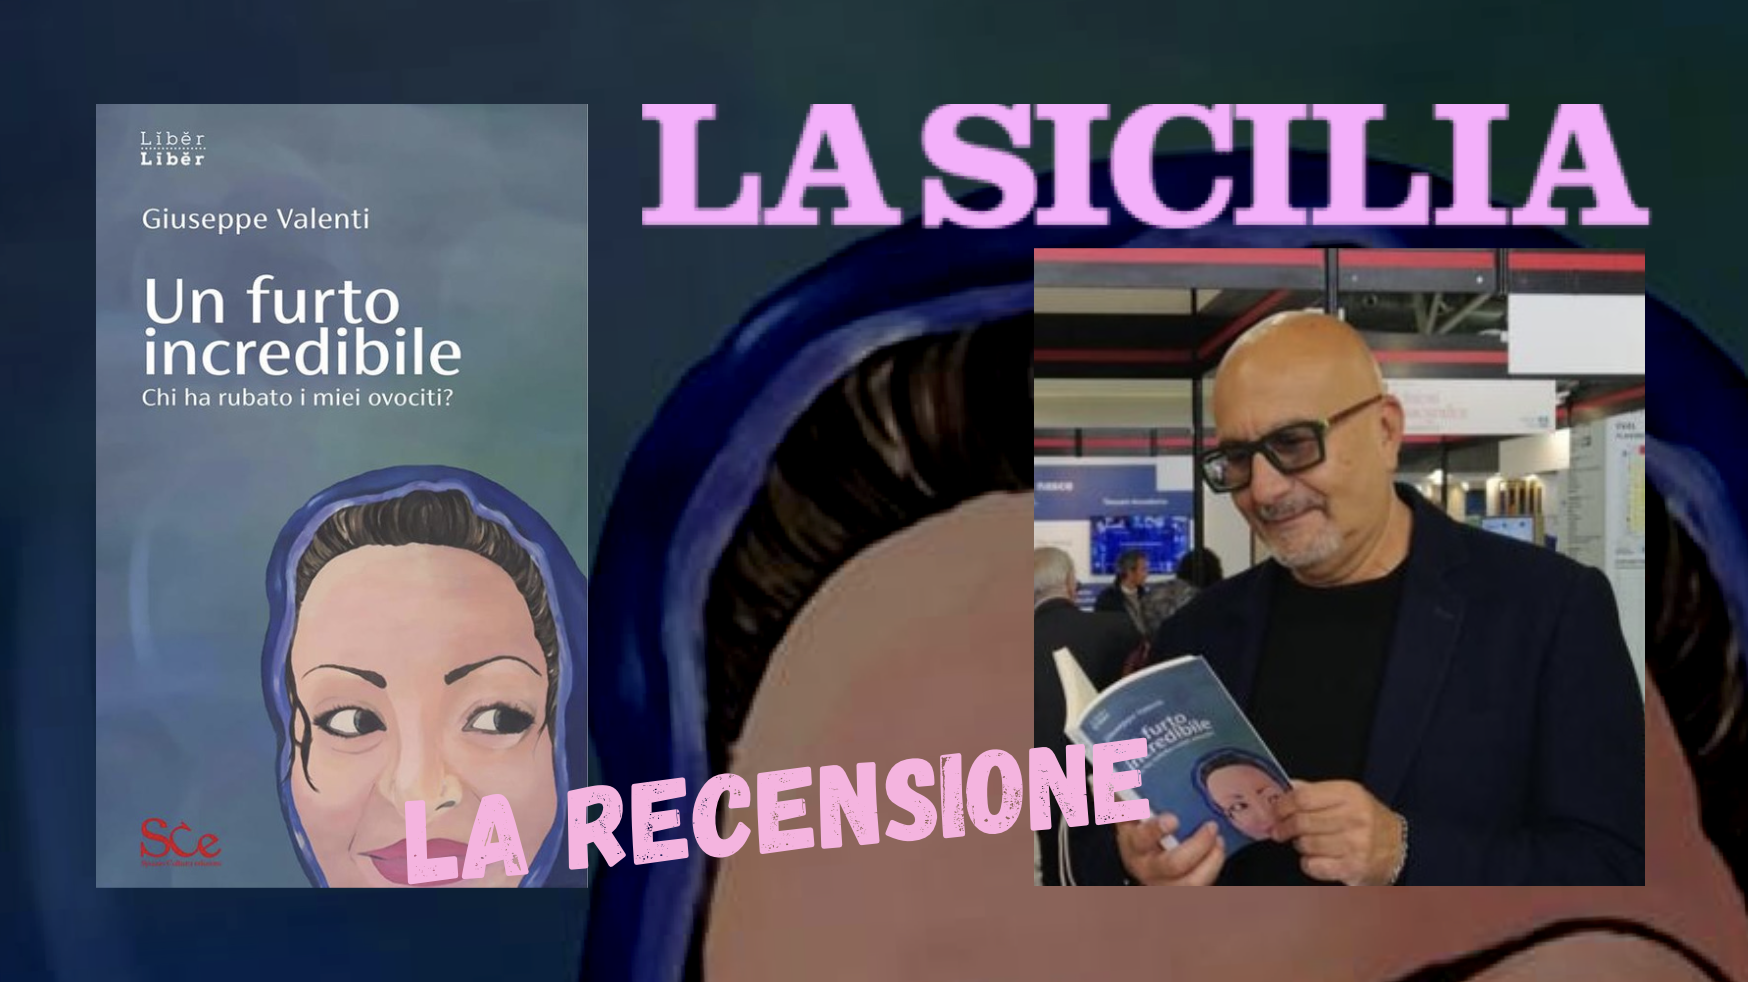 SMF per La Sicilia – “Un furto incredibile” – Giuseppe Valenti torna in libreria con una storia shock – Recensione